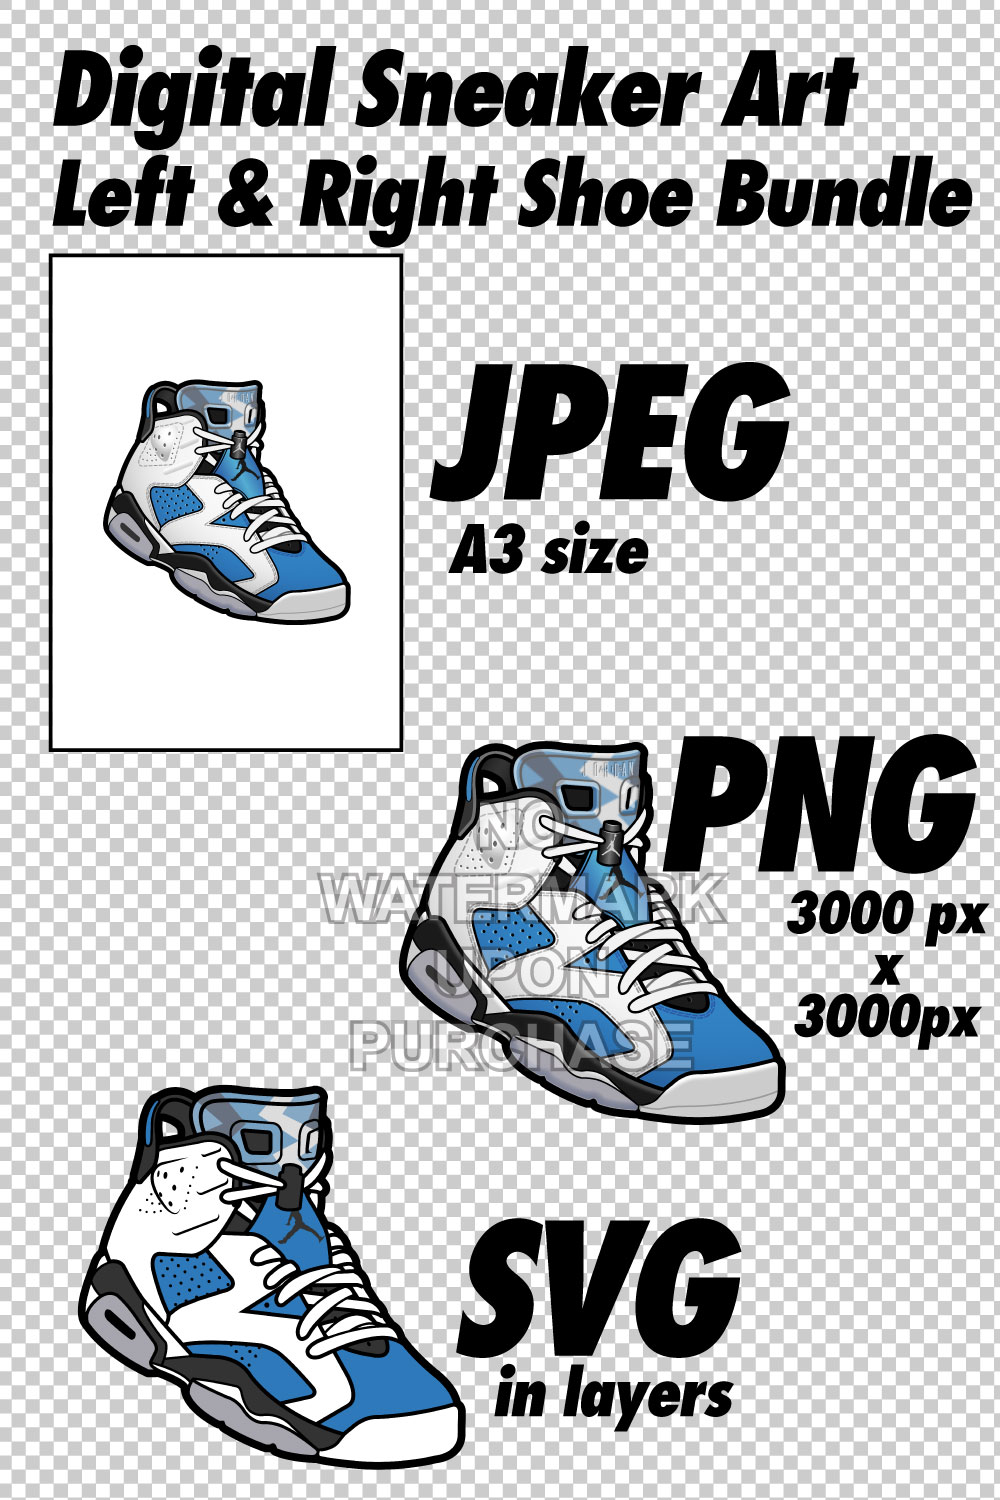 Air Jordan 6 White UNC JPEG PNG SVG right & left shoe bundle pinterest preview image.